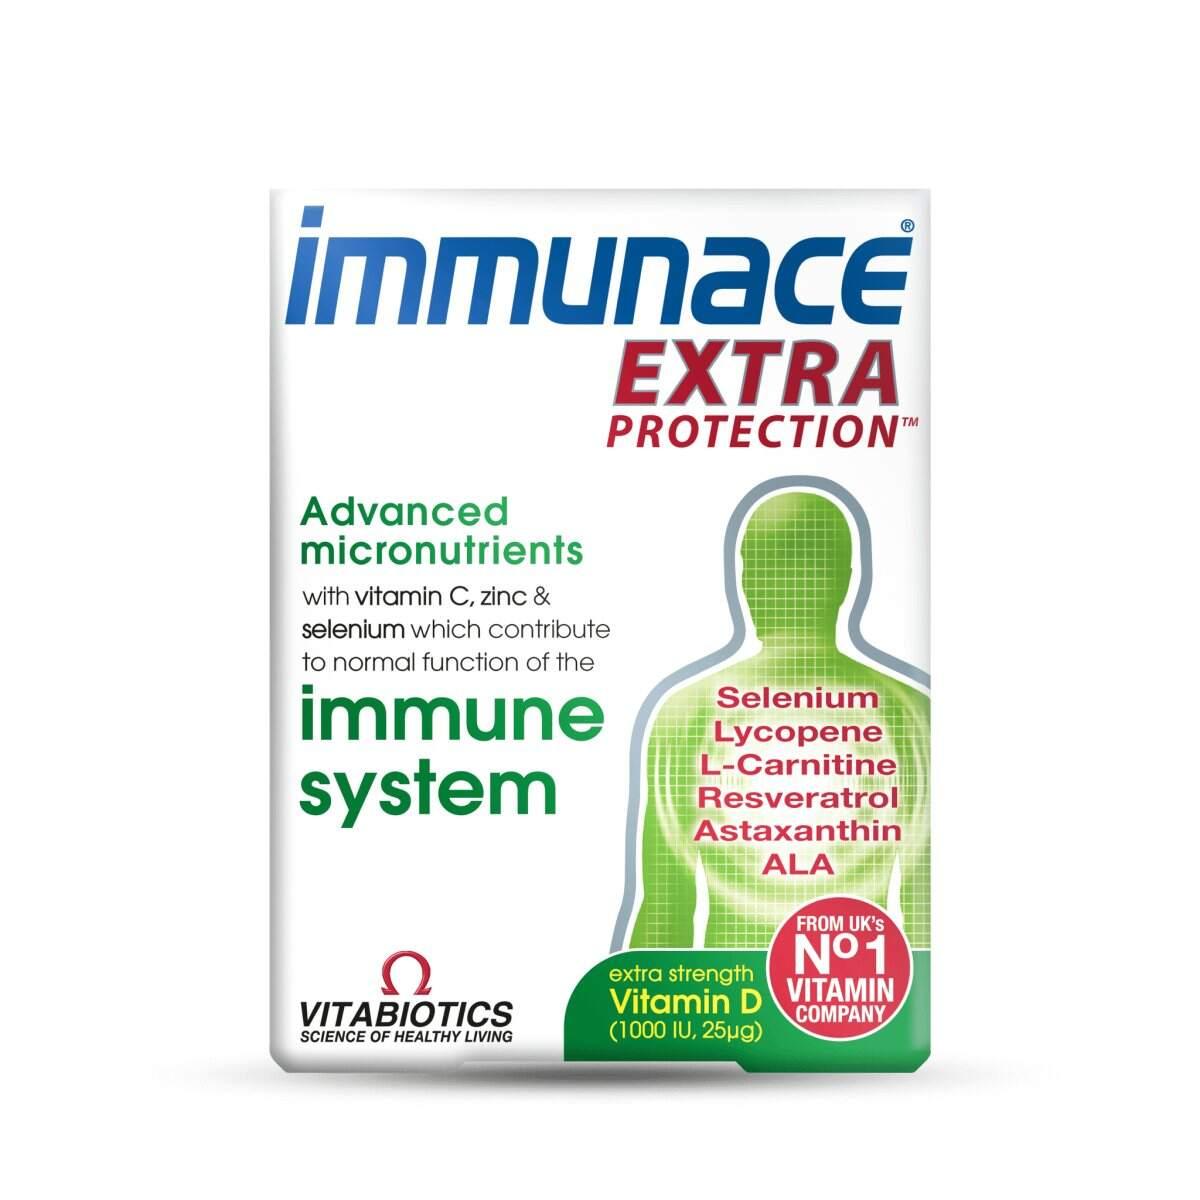 Immunace Extra Protection - Rightangled